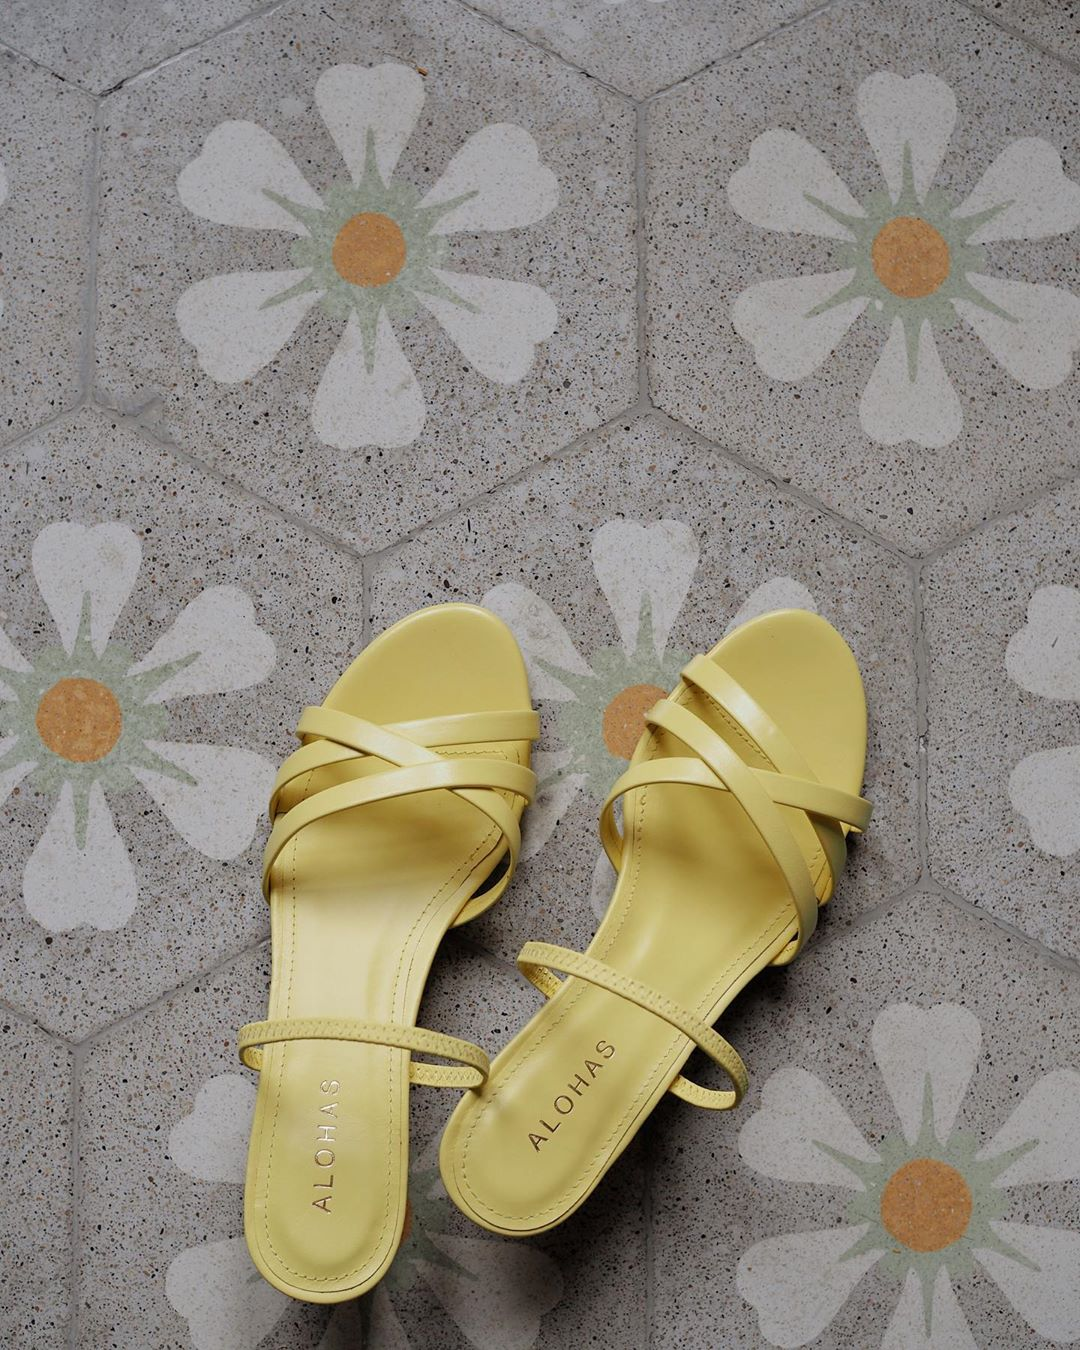 Las sandalias con tacón de color amarillo de esta foto, son el calzado favorito de la influencer española de moda Gigi Vives